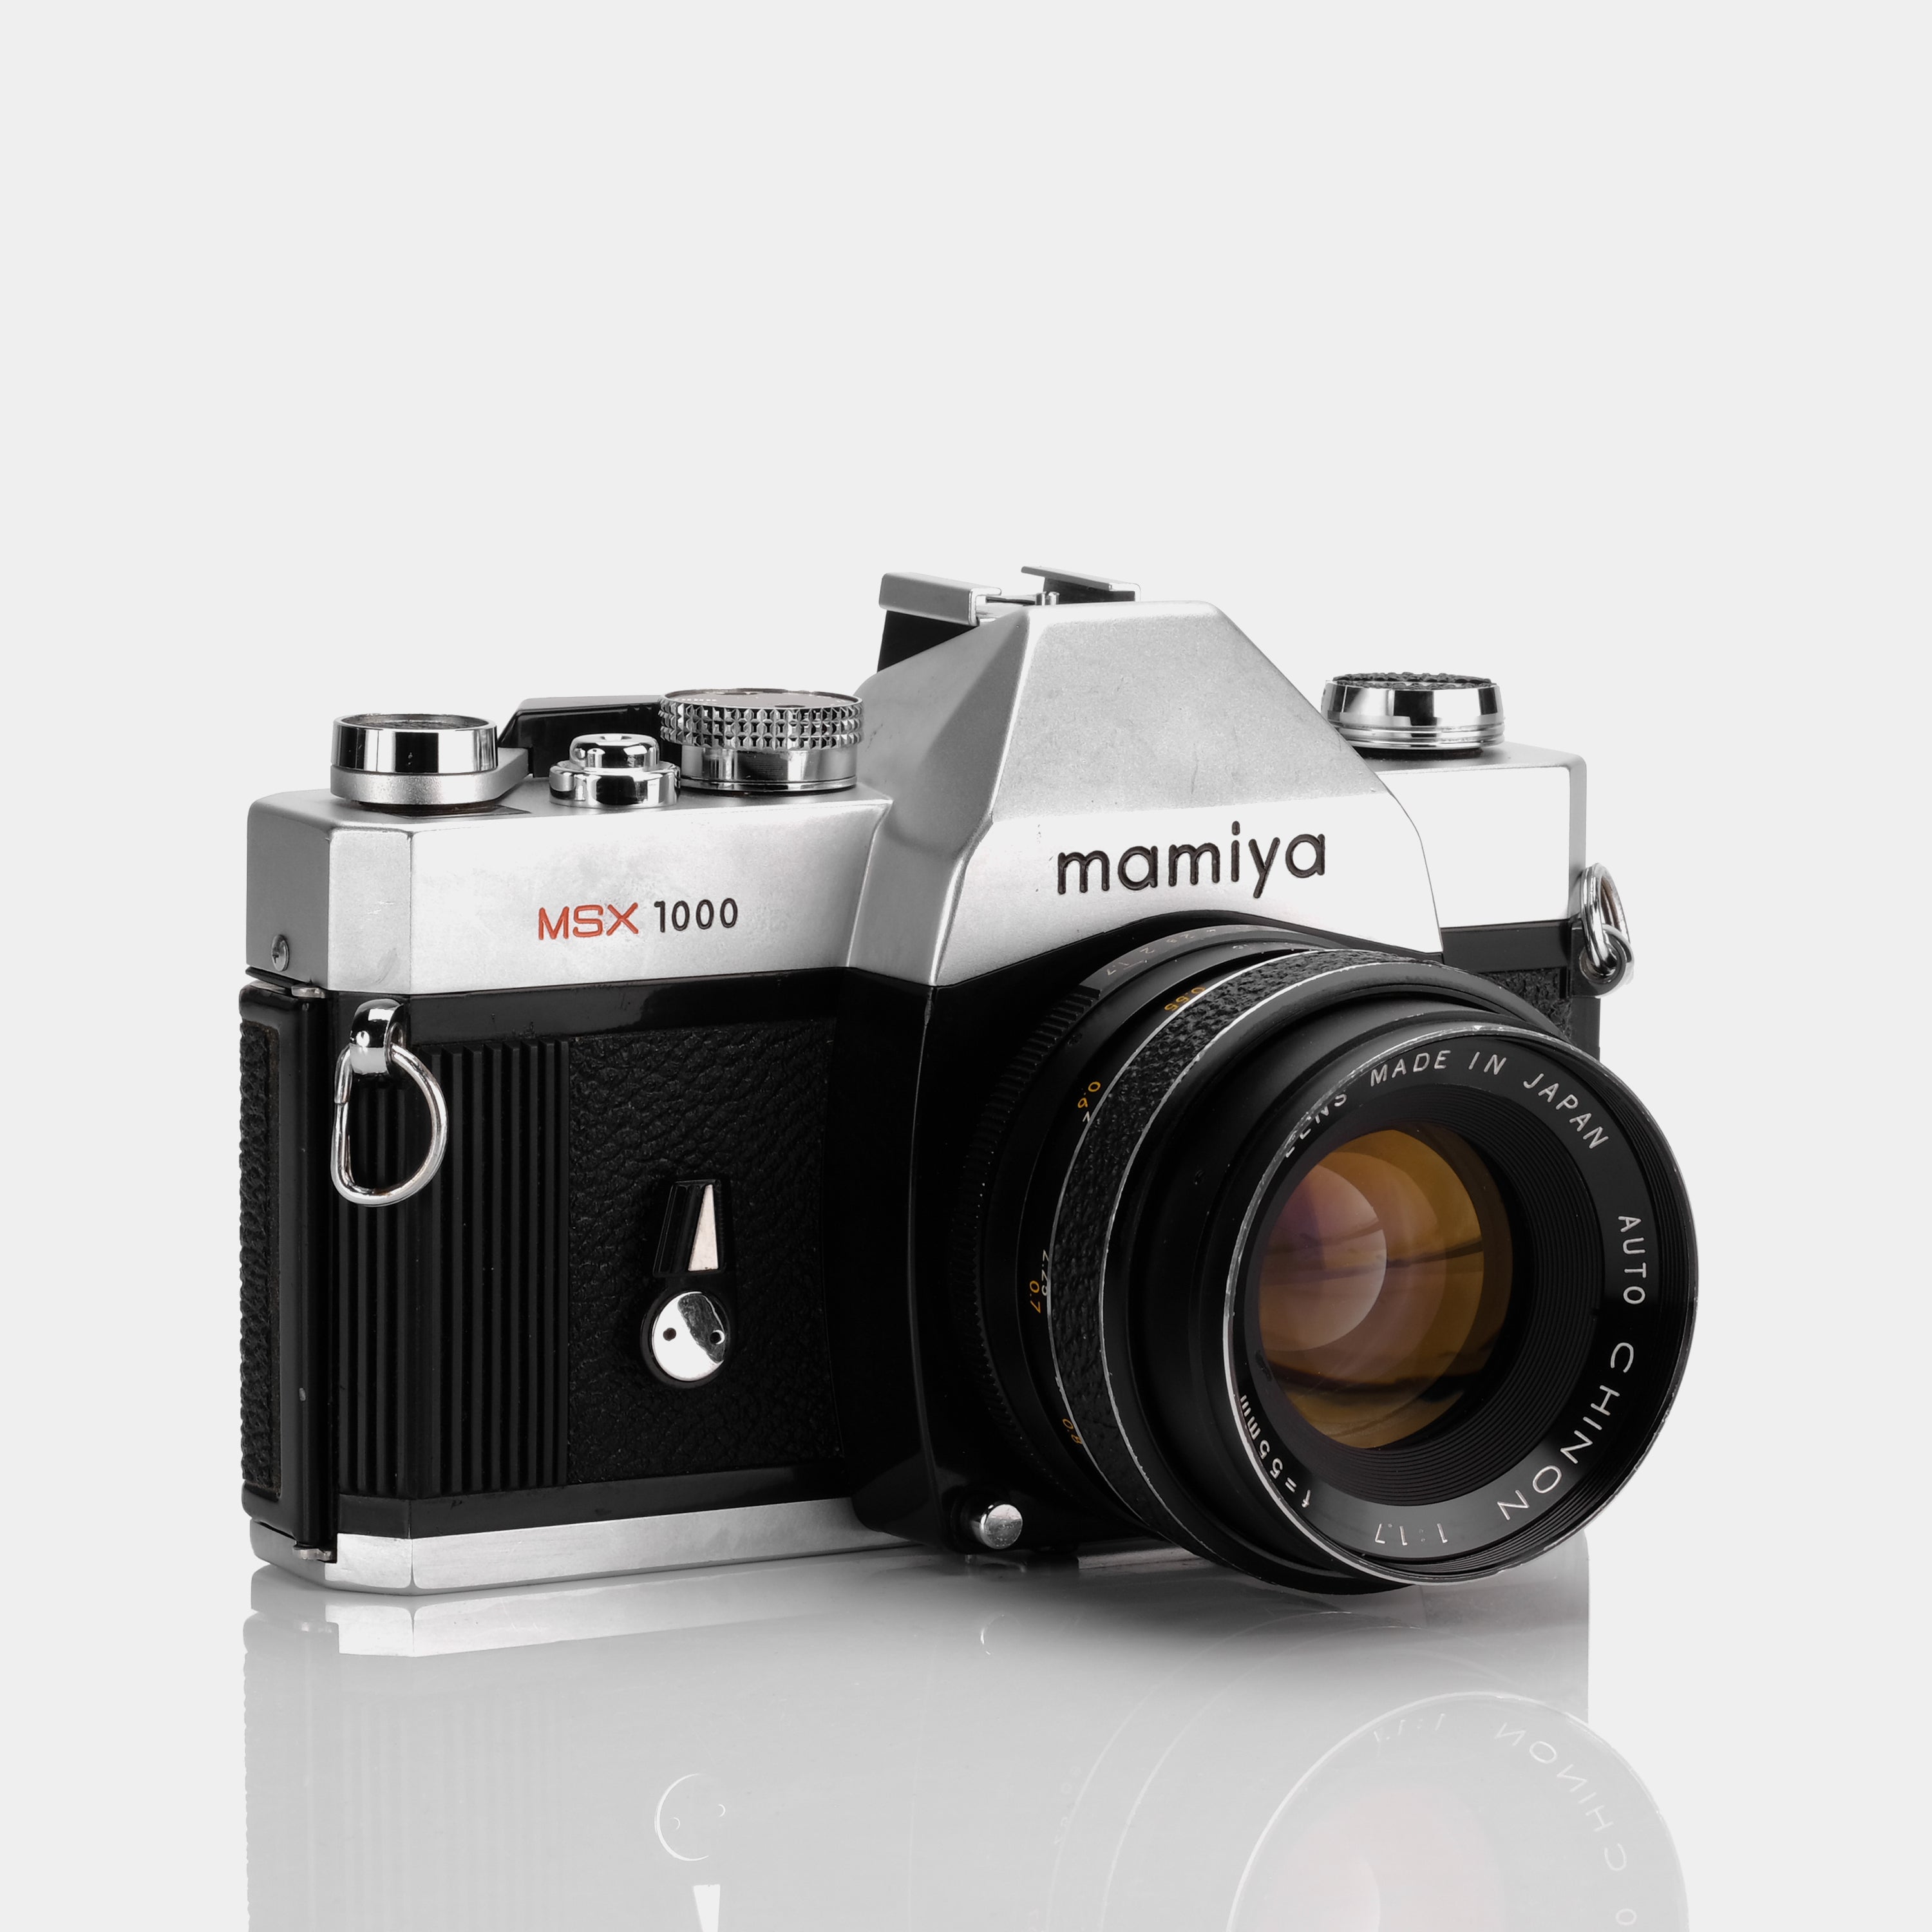 Mamiya MSX 1000 SLR 35mm Film Camera